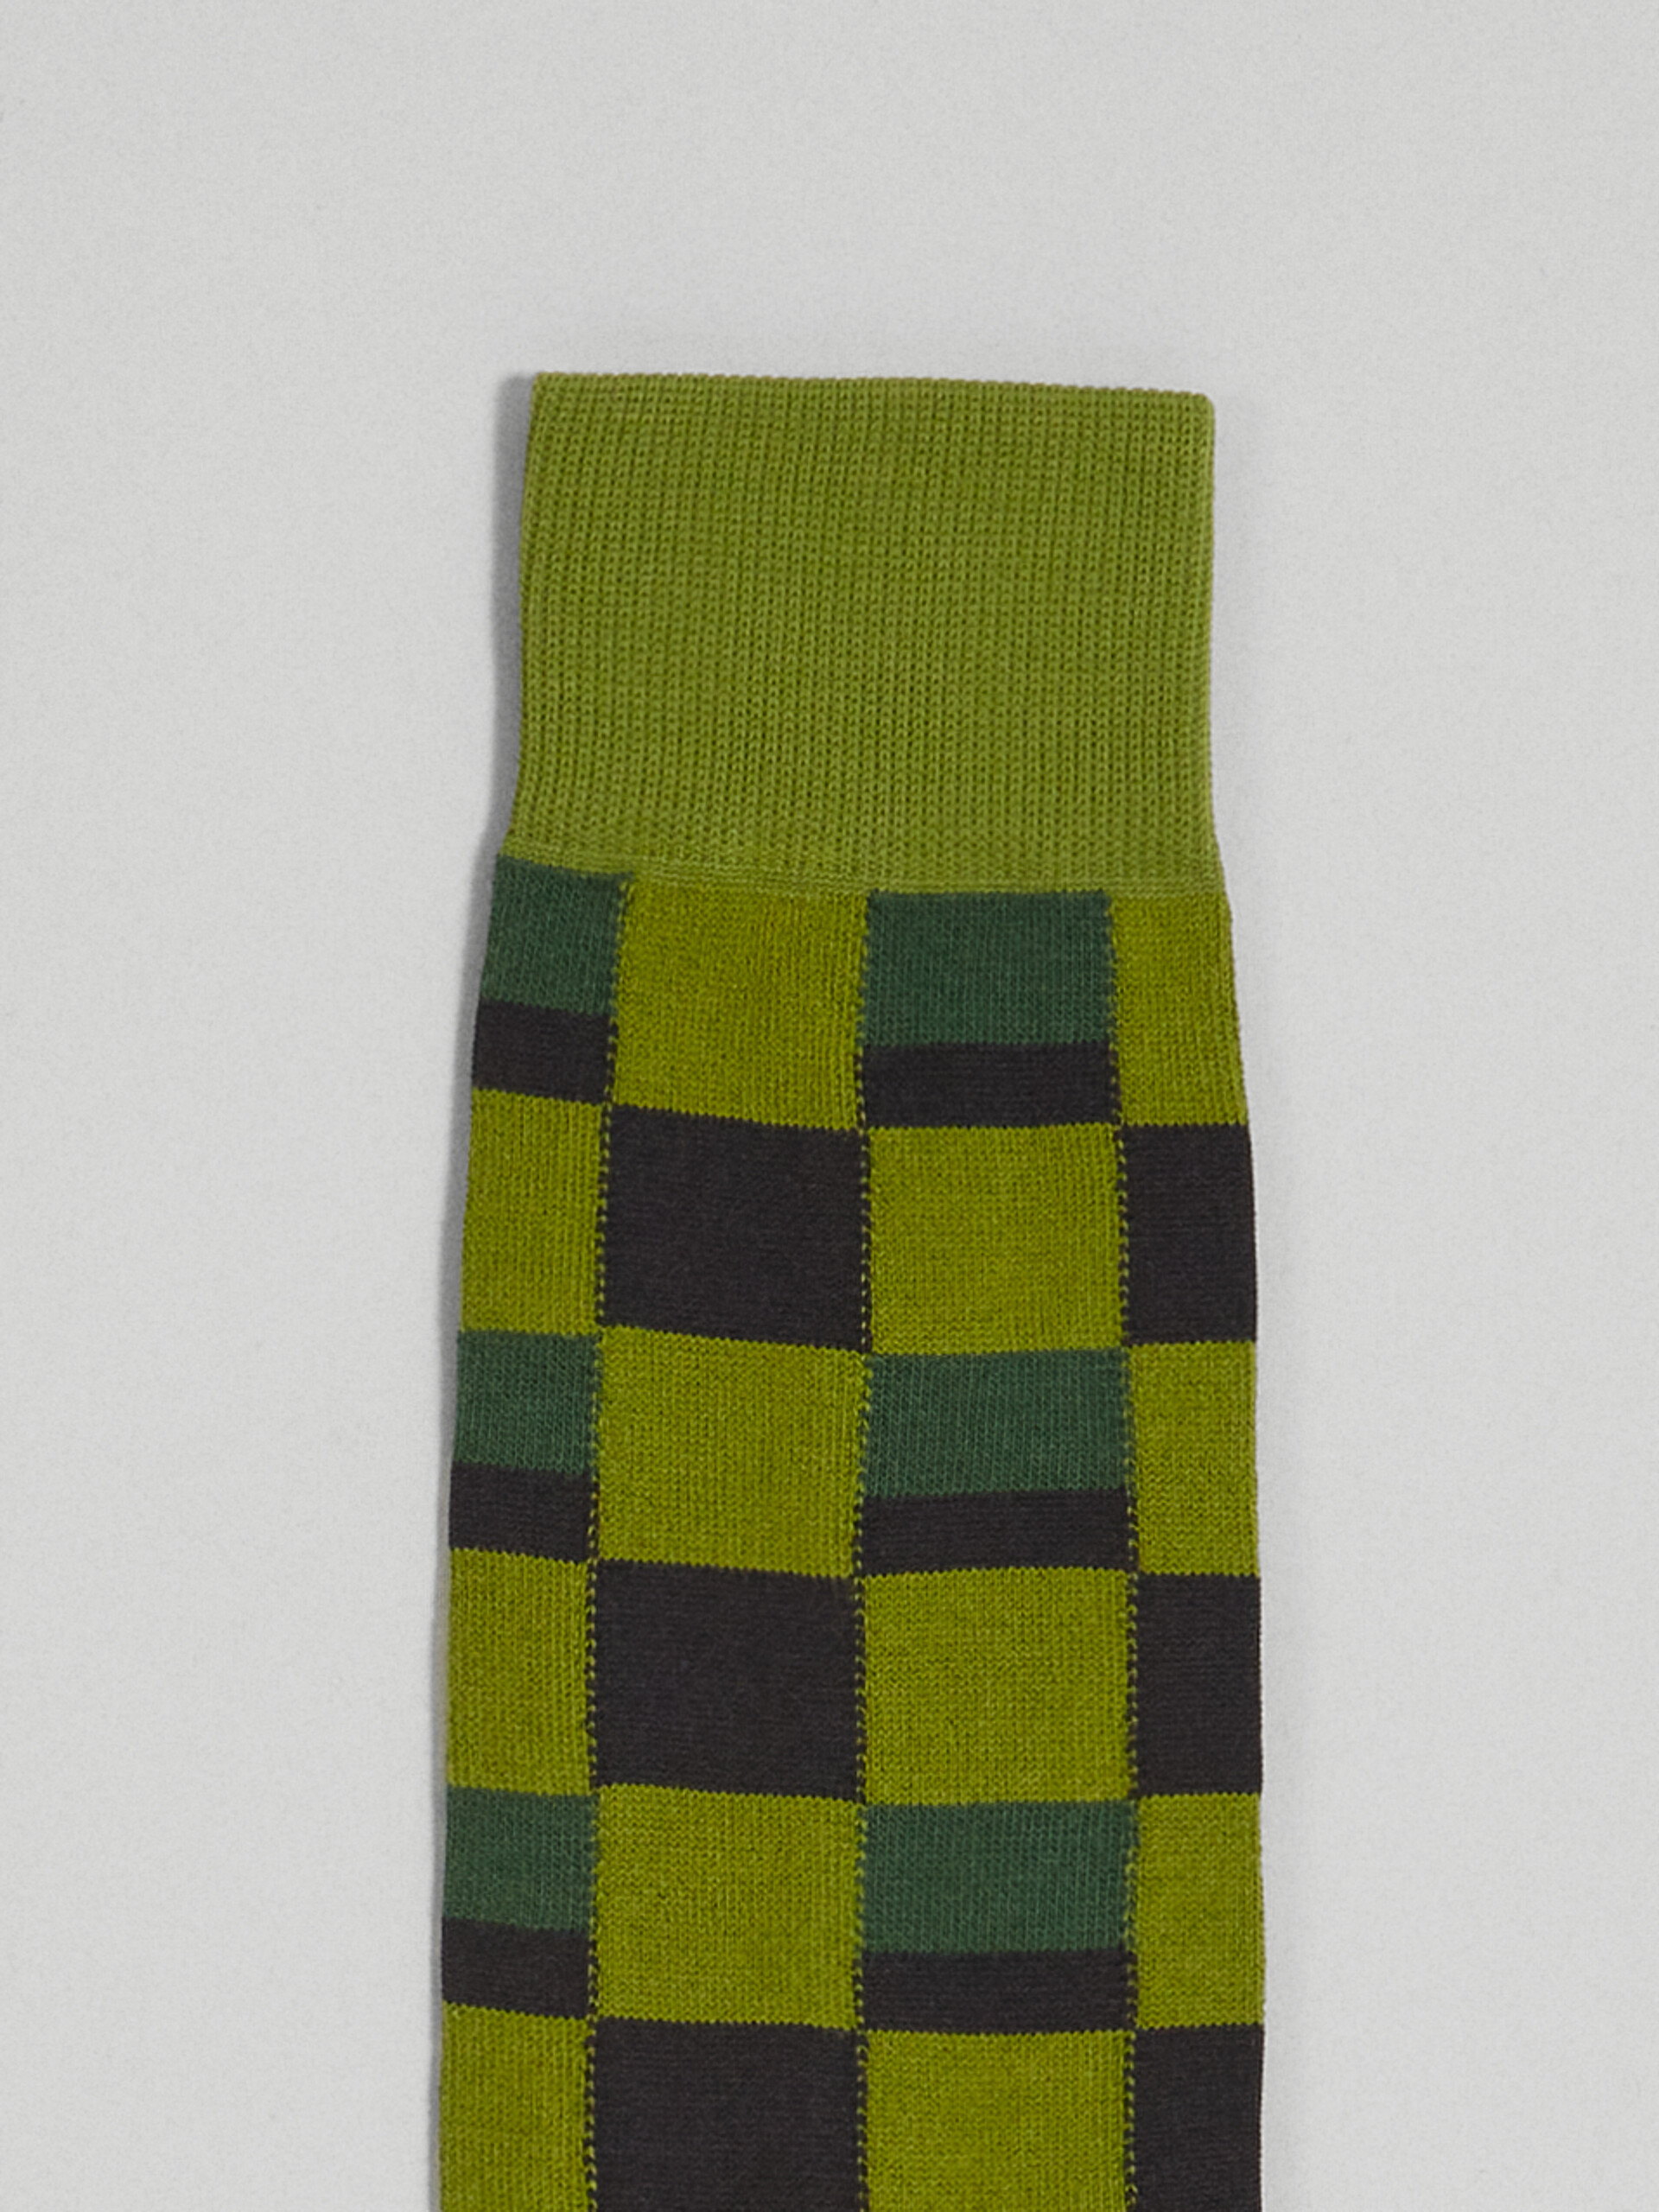 Iconic Damier jacquard cotton and nylon sock - Socks - Image 3